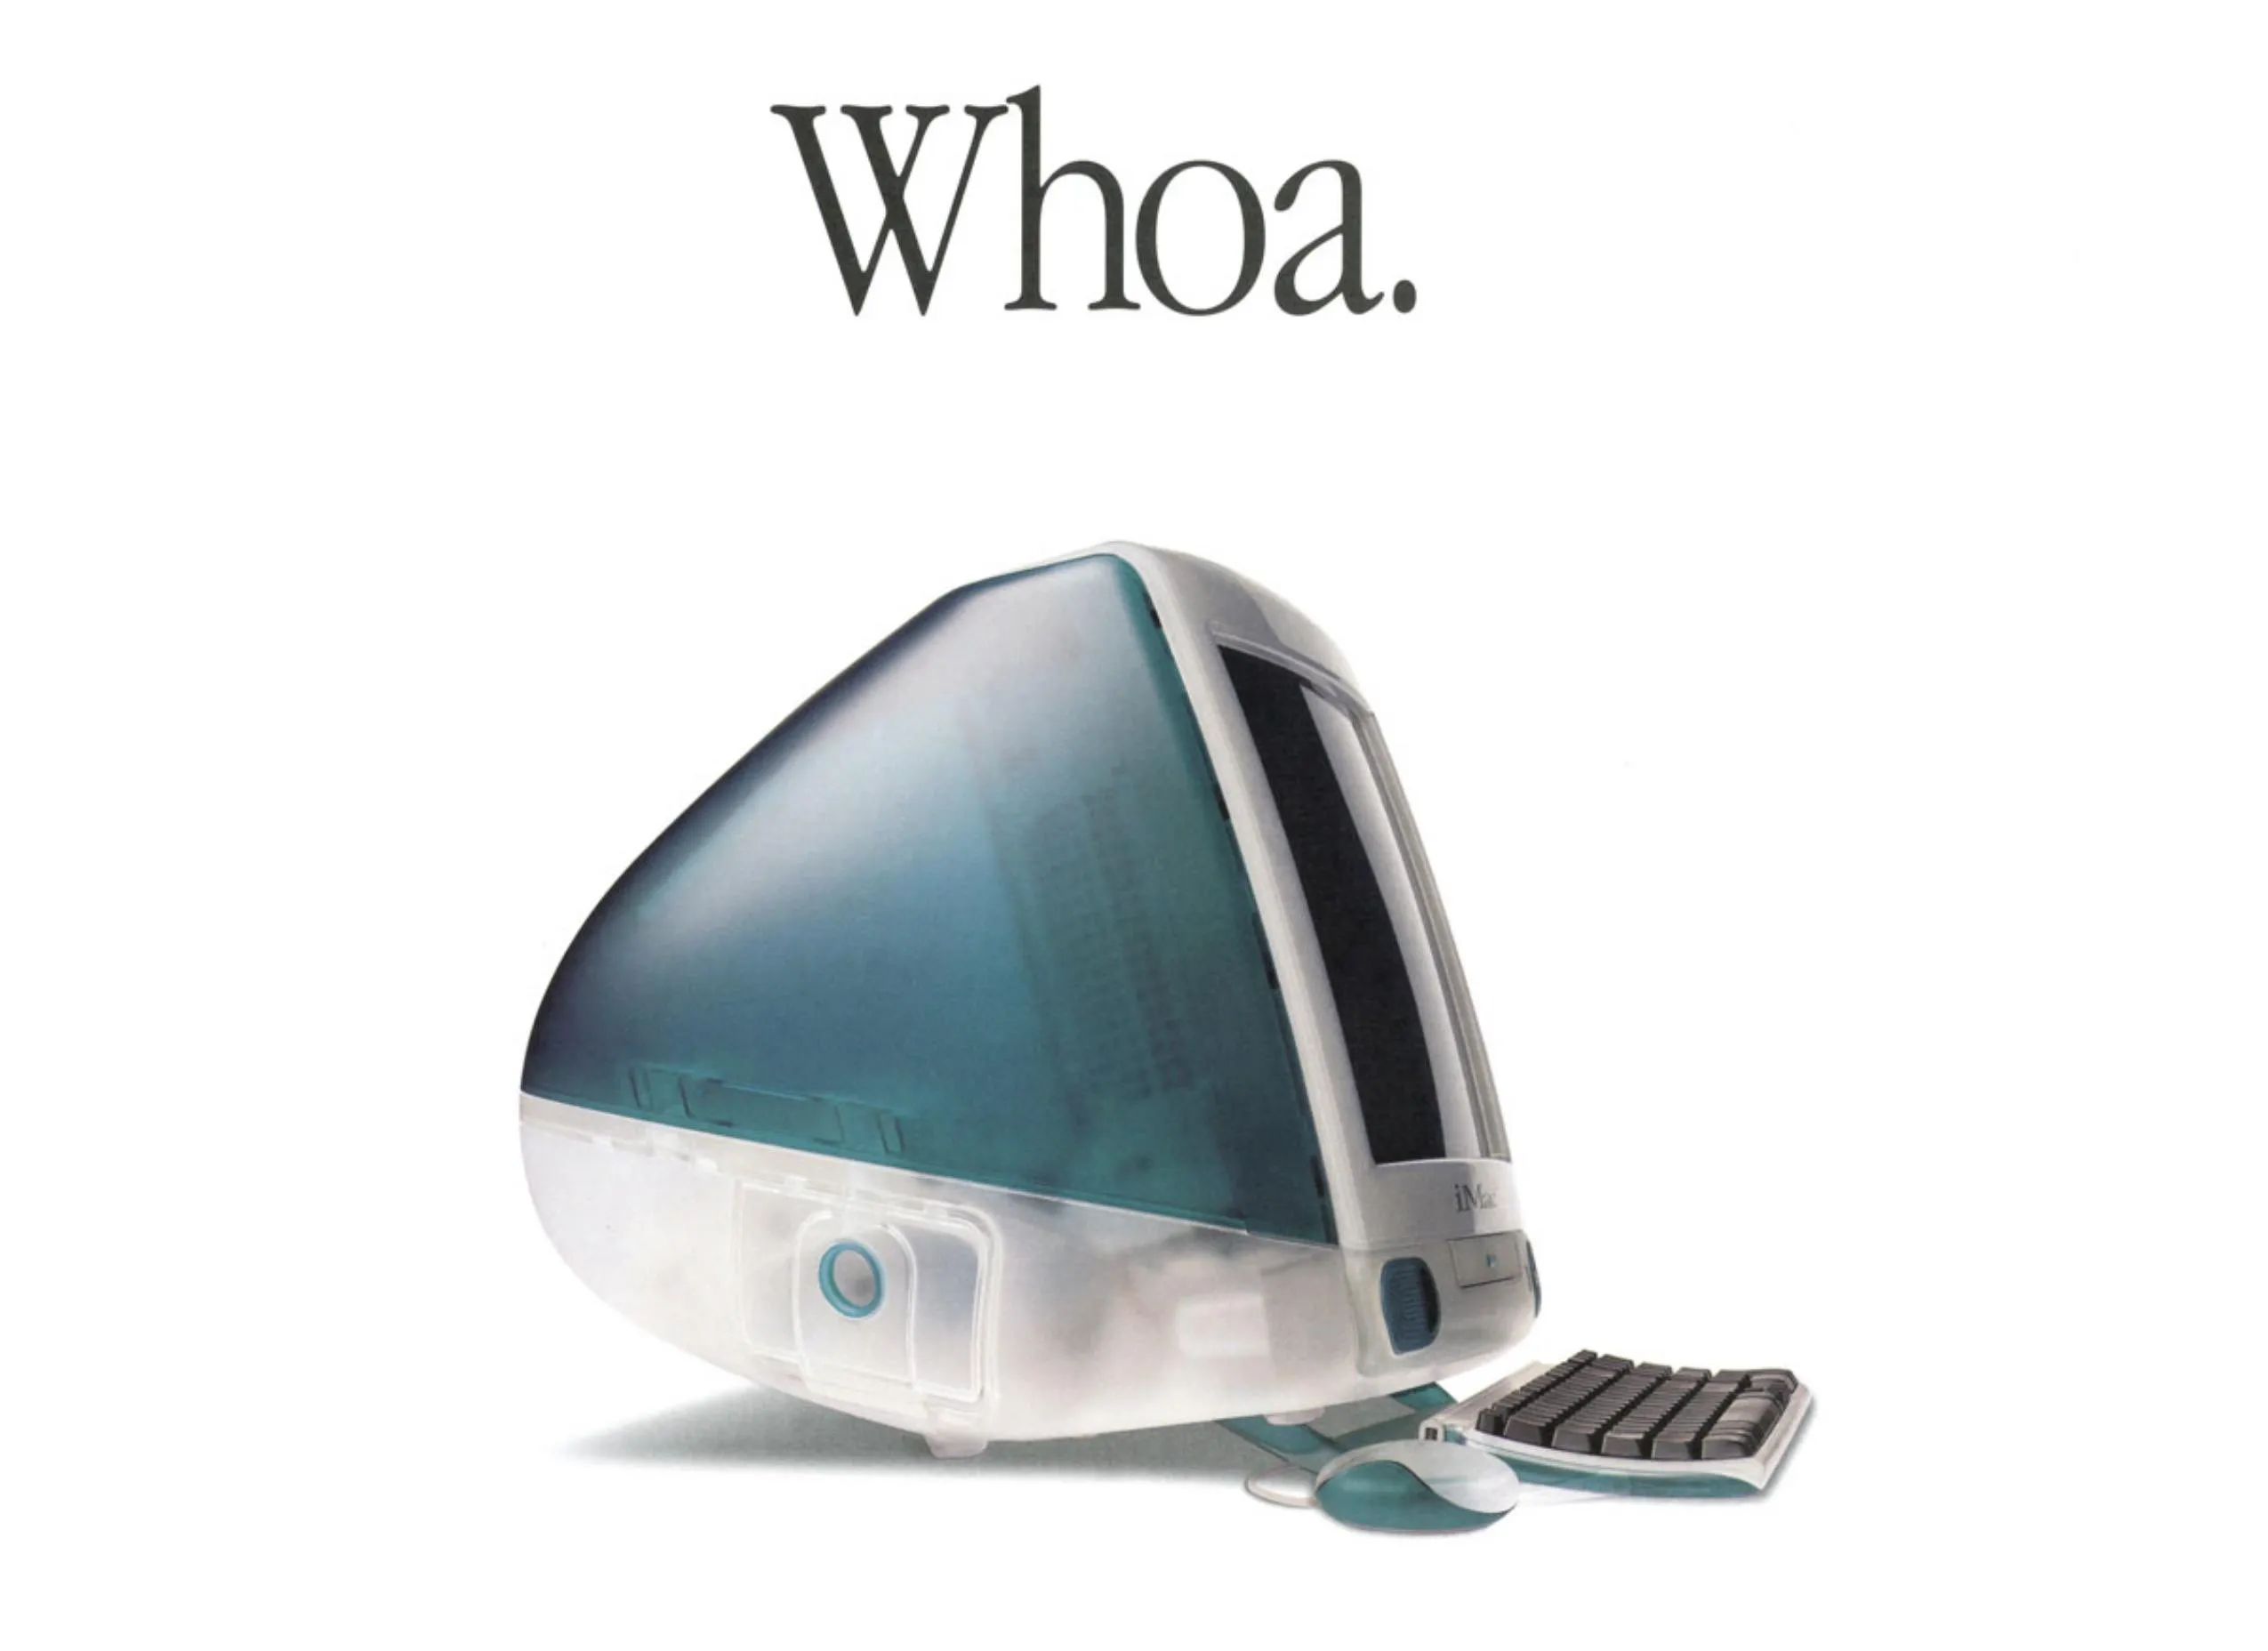 iMac iniciou a agora clássica nomenclatura de produtos da Apple (Imagem: Reprodução/Apple)